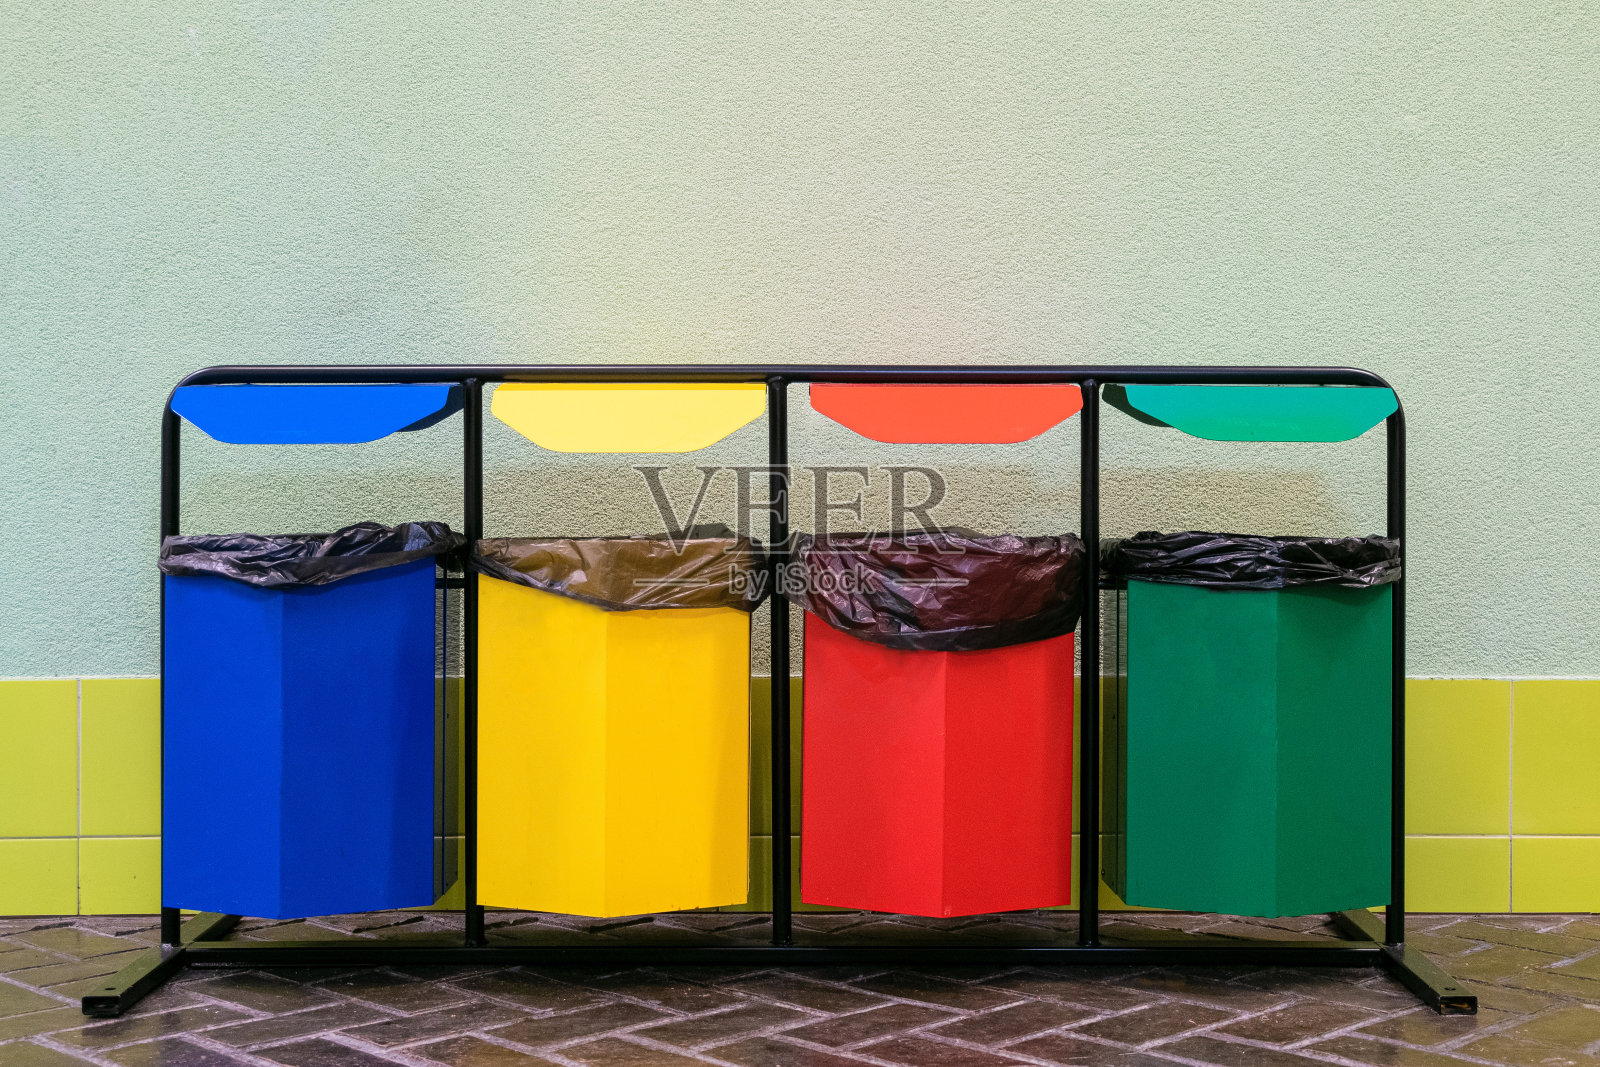 四个不同颜色的垃圾桶，用于分类垃圾。玻璃、金属、纸张和塑料分开收藏。照片摄影图片